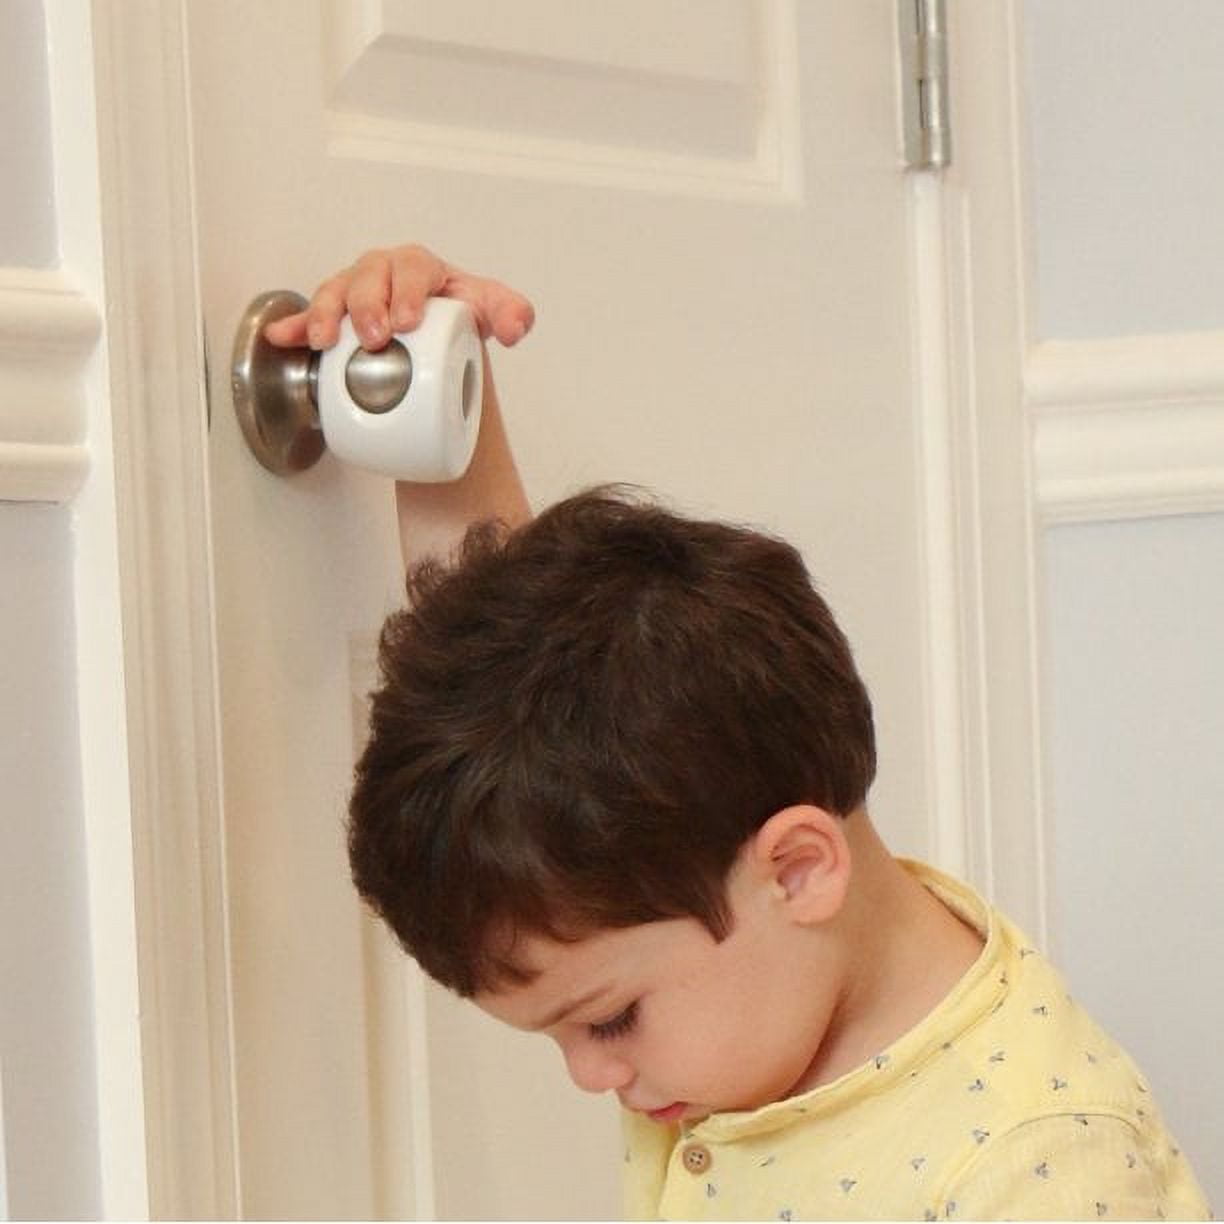 Oven Door Lock Child Safety, Heat-Resistant – The Baby's Room